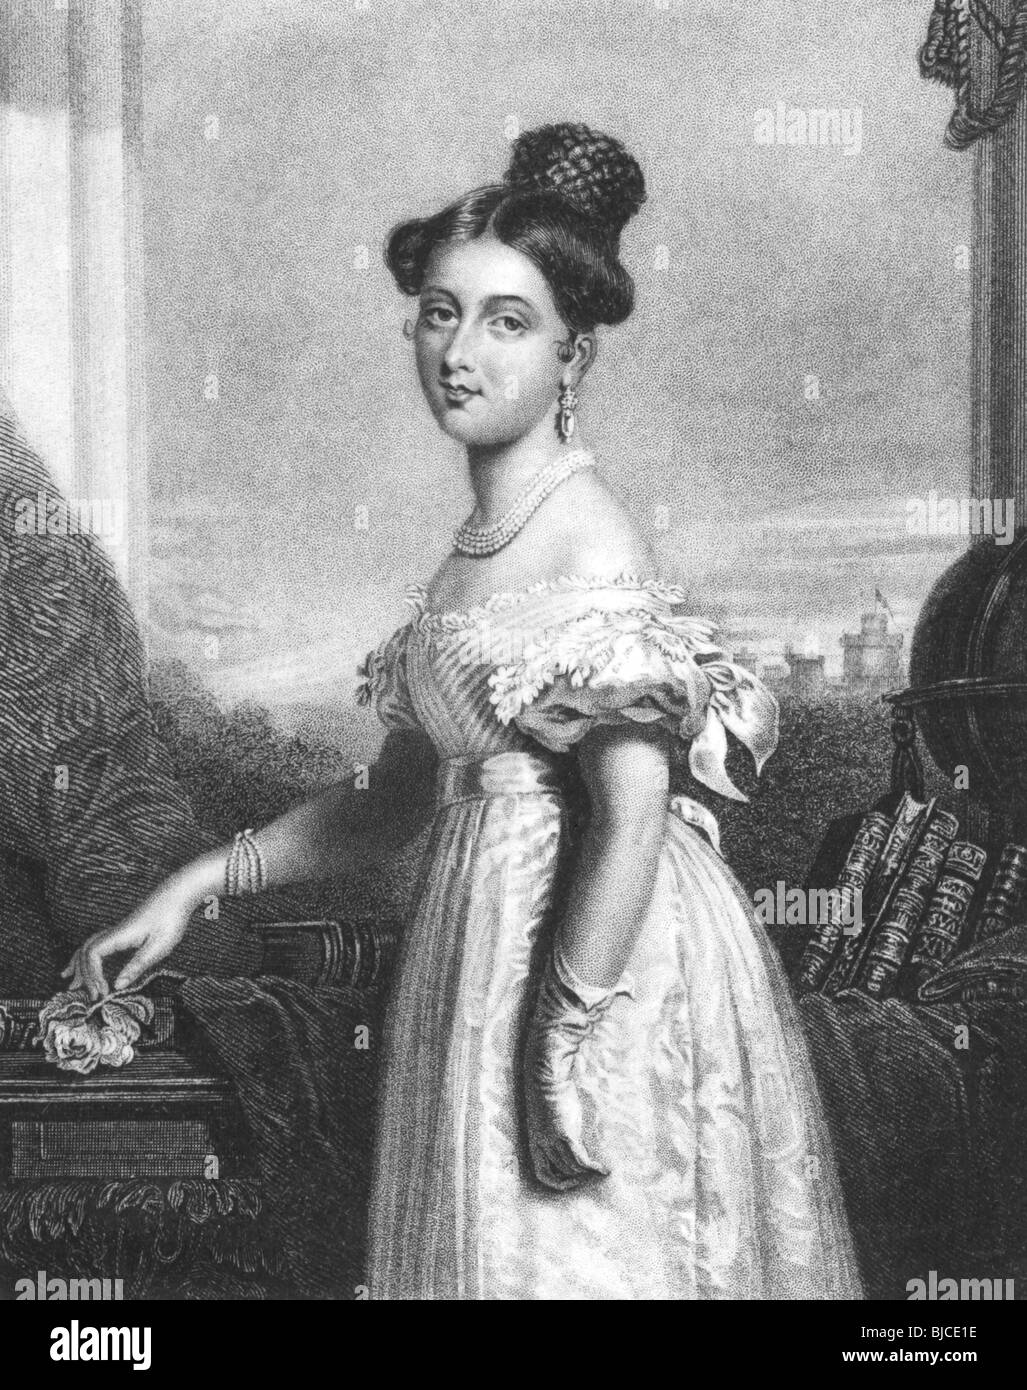 Königin Victoria (1819-1901) im Alter von 18 auf Gravur aus den 1800er Jahren. Königin von Großbritannien im Jahre 1837-1901. Stockfoto